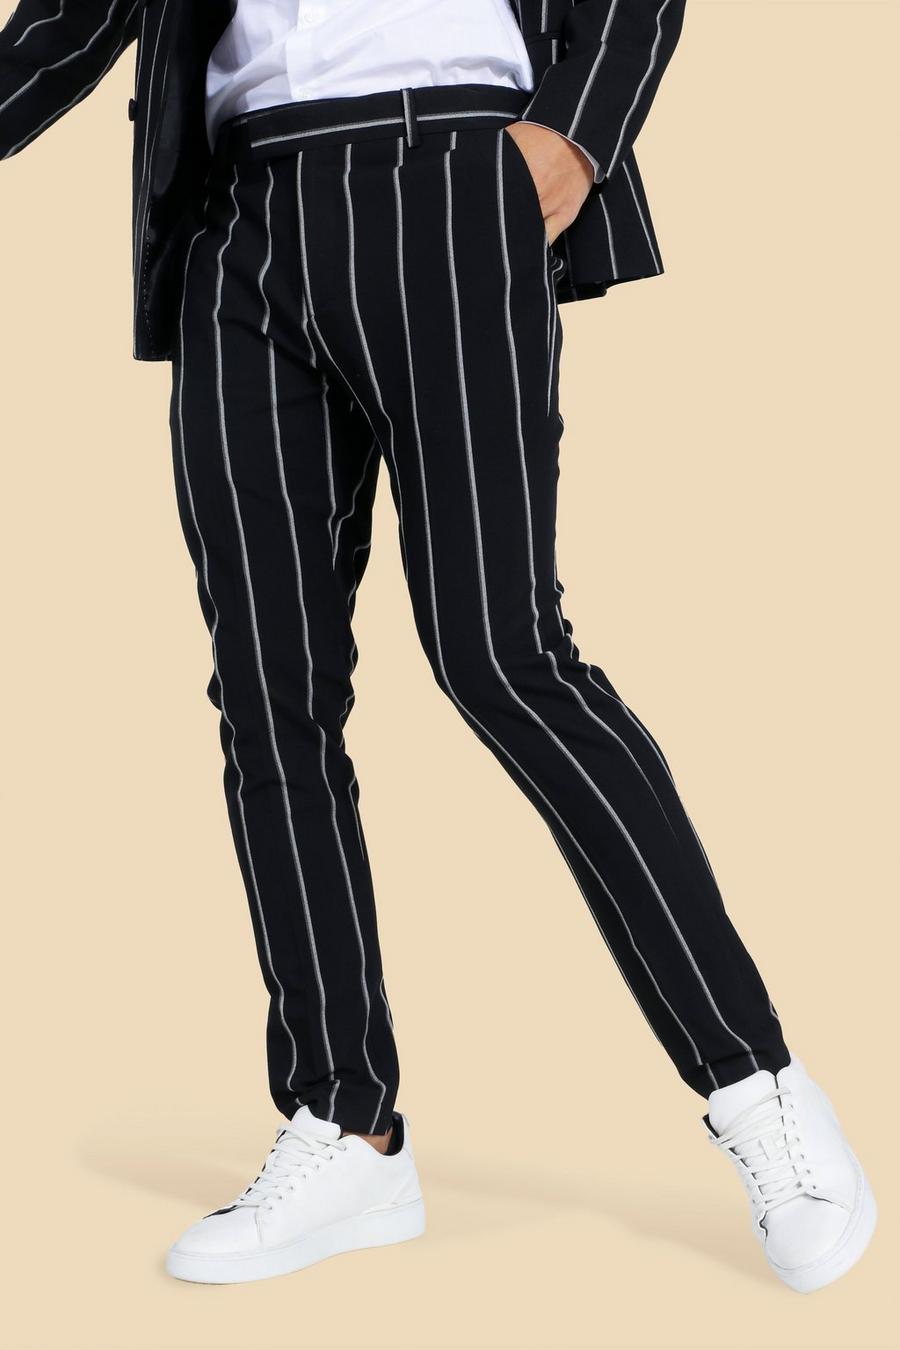 Bea Fluid Pinstripe Suit Pants - Black/White – The Frankie Shop